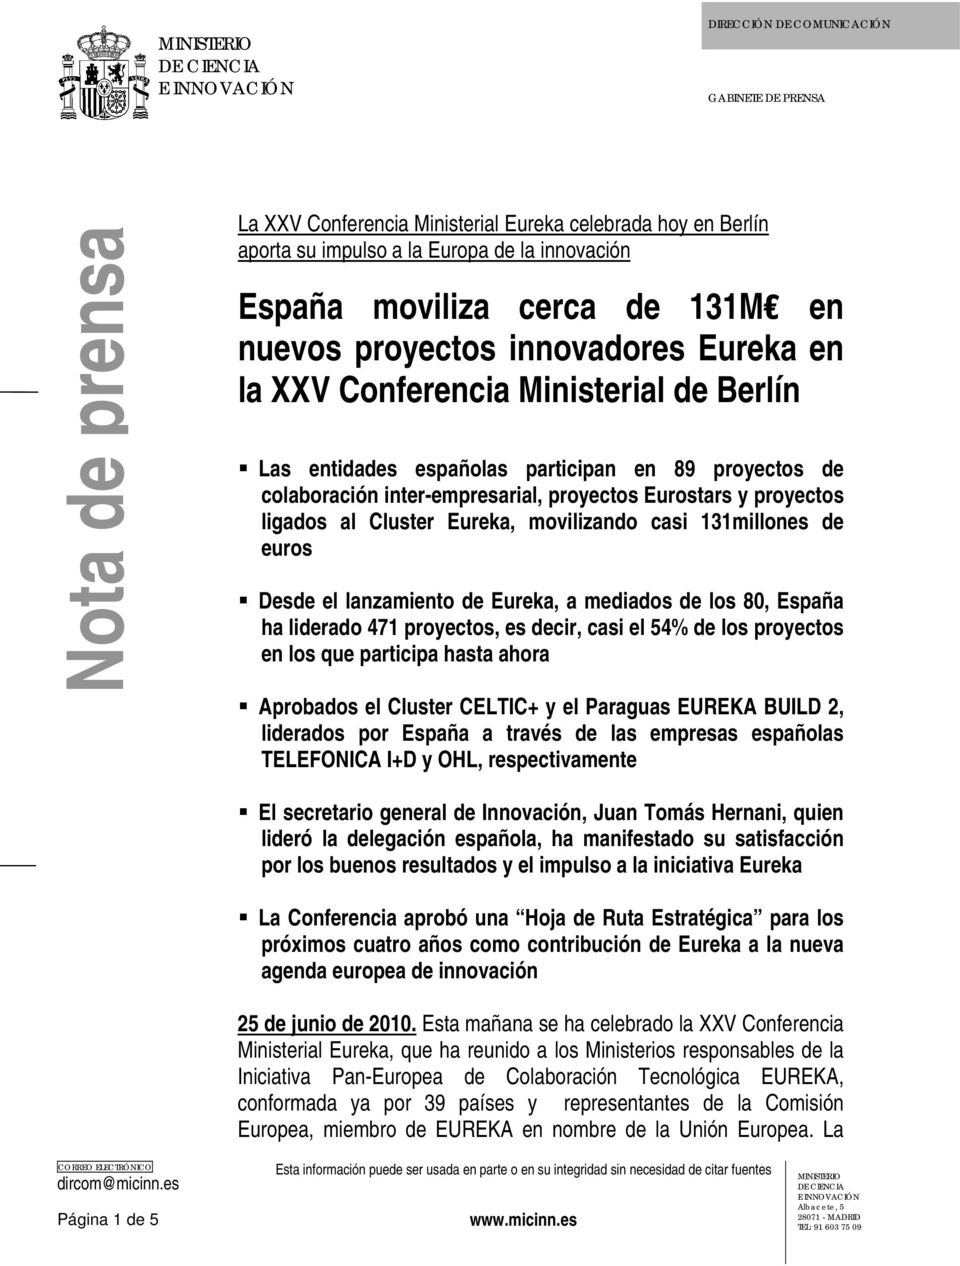 proyectos ligados al Cluster Eureka, movilizando casi 131millones de euros Desde el lanzamiento de Eureka, a mediados de los 80, España ha liderado 471 proyectos, es decir, casi el 54% de los